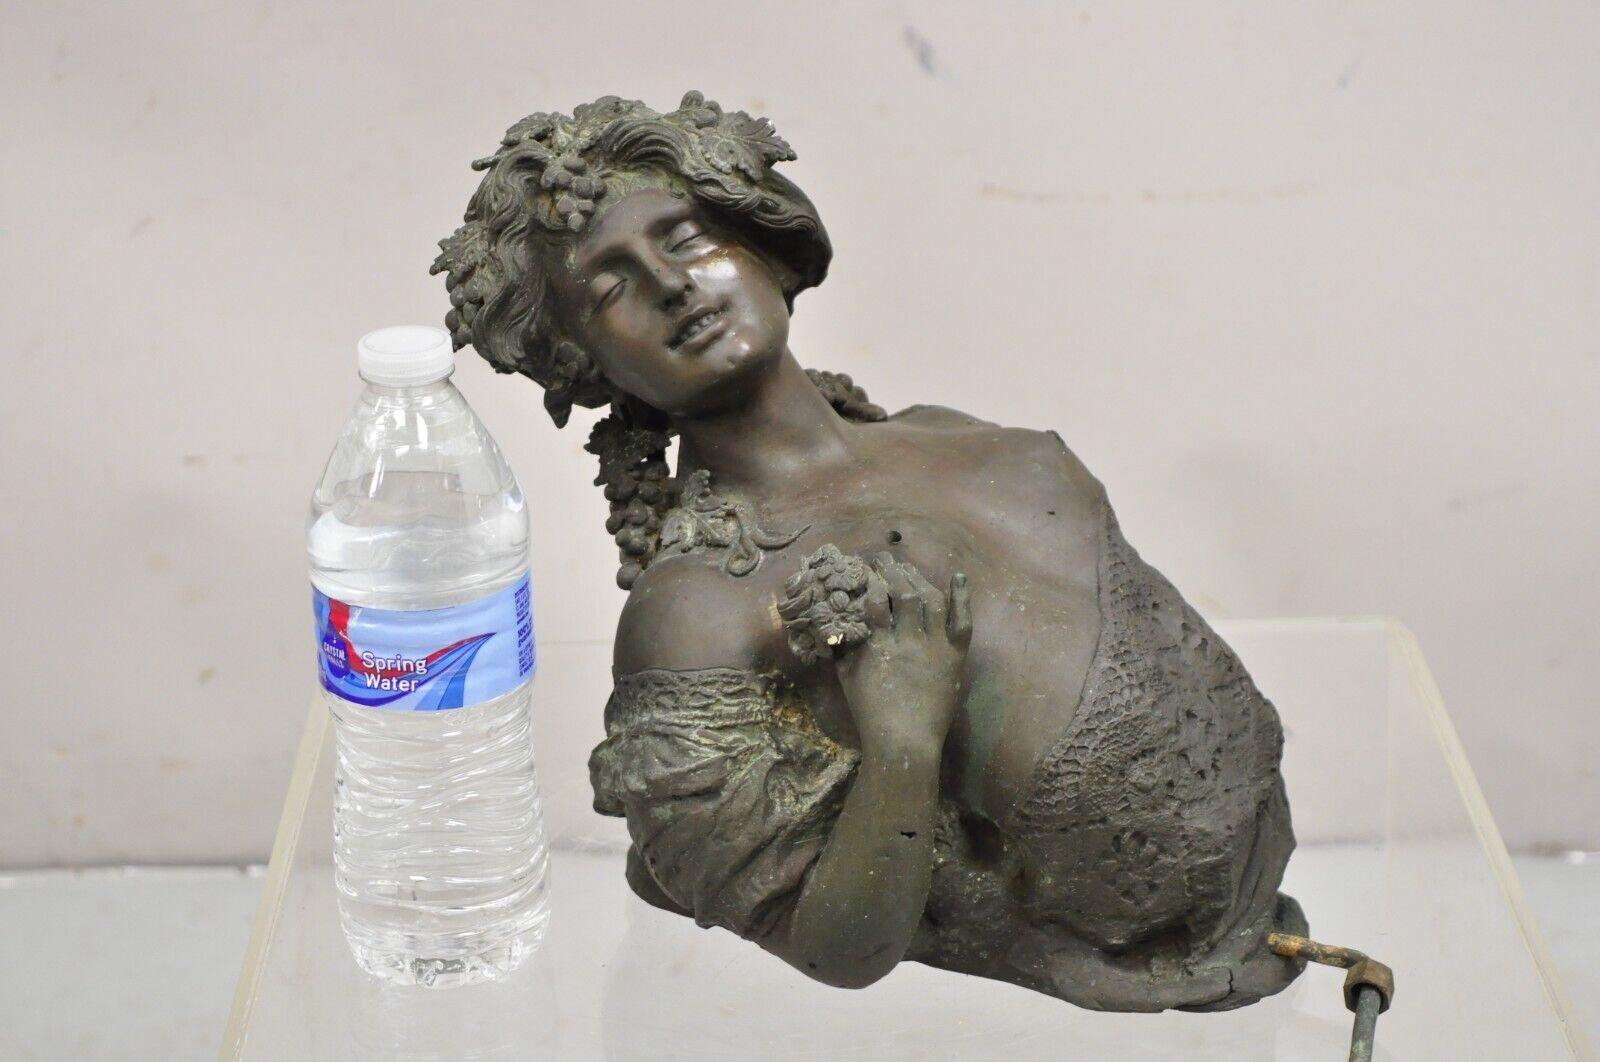 Buste de femme en bronze ancien, de style victorien, fixé au mur, fontaine d'eau de jardin Élément architectural. L'objet comporte des trous dans la poitrine de la femme pour l'écoulement de l'eau (je n'ai pas vu l'objet utilisé ni testé), belle